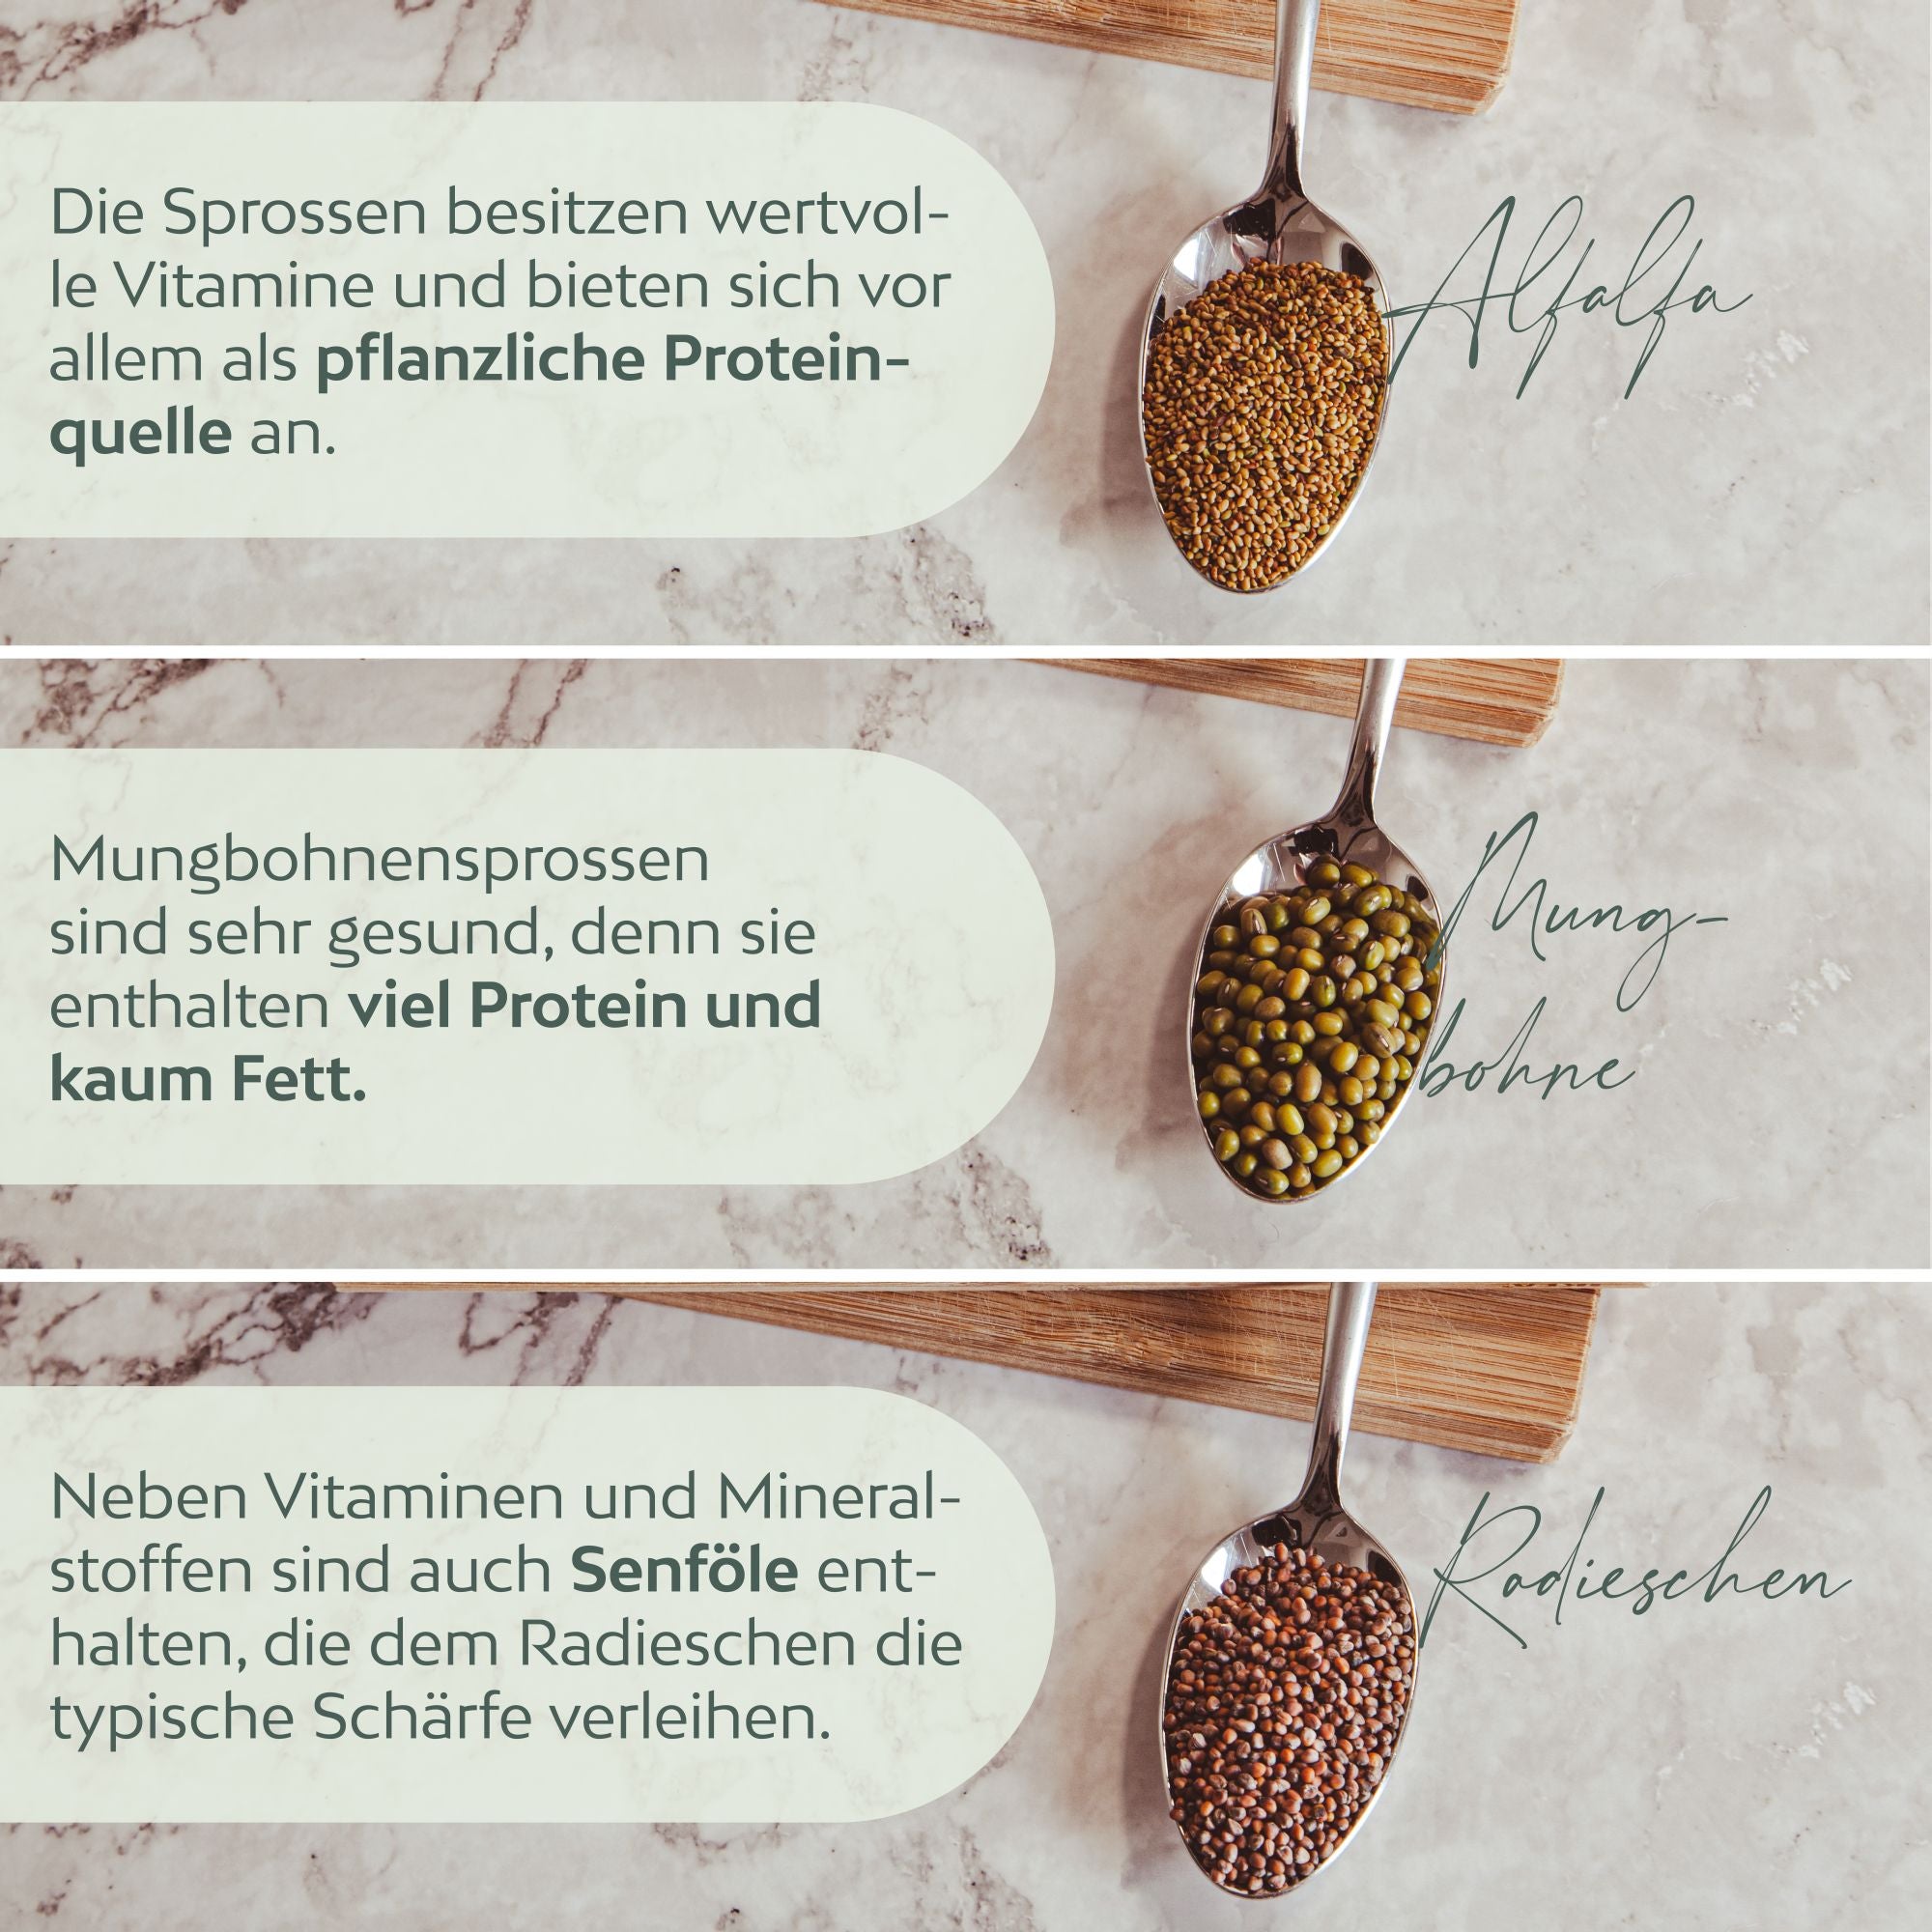 Sprossenglas Keimglas Set mit 3 Bio Sprossen Samen - Microgreens Anzuchtset für knackige Keimsprossen (Alfalfa, Mungbohne, Radieschen)